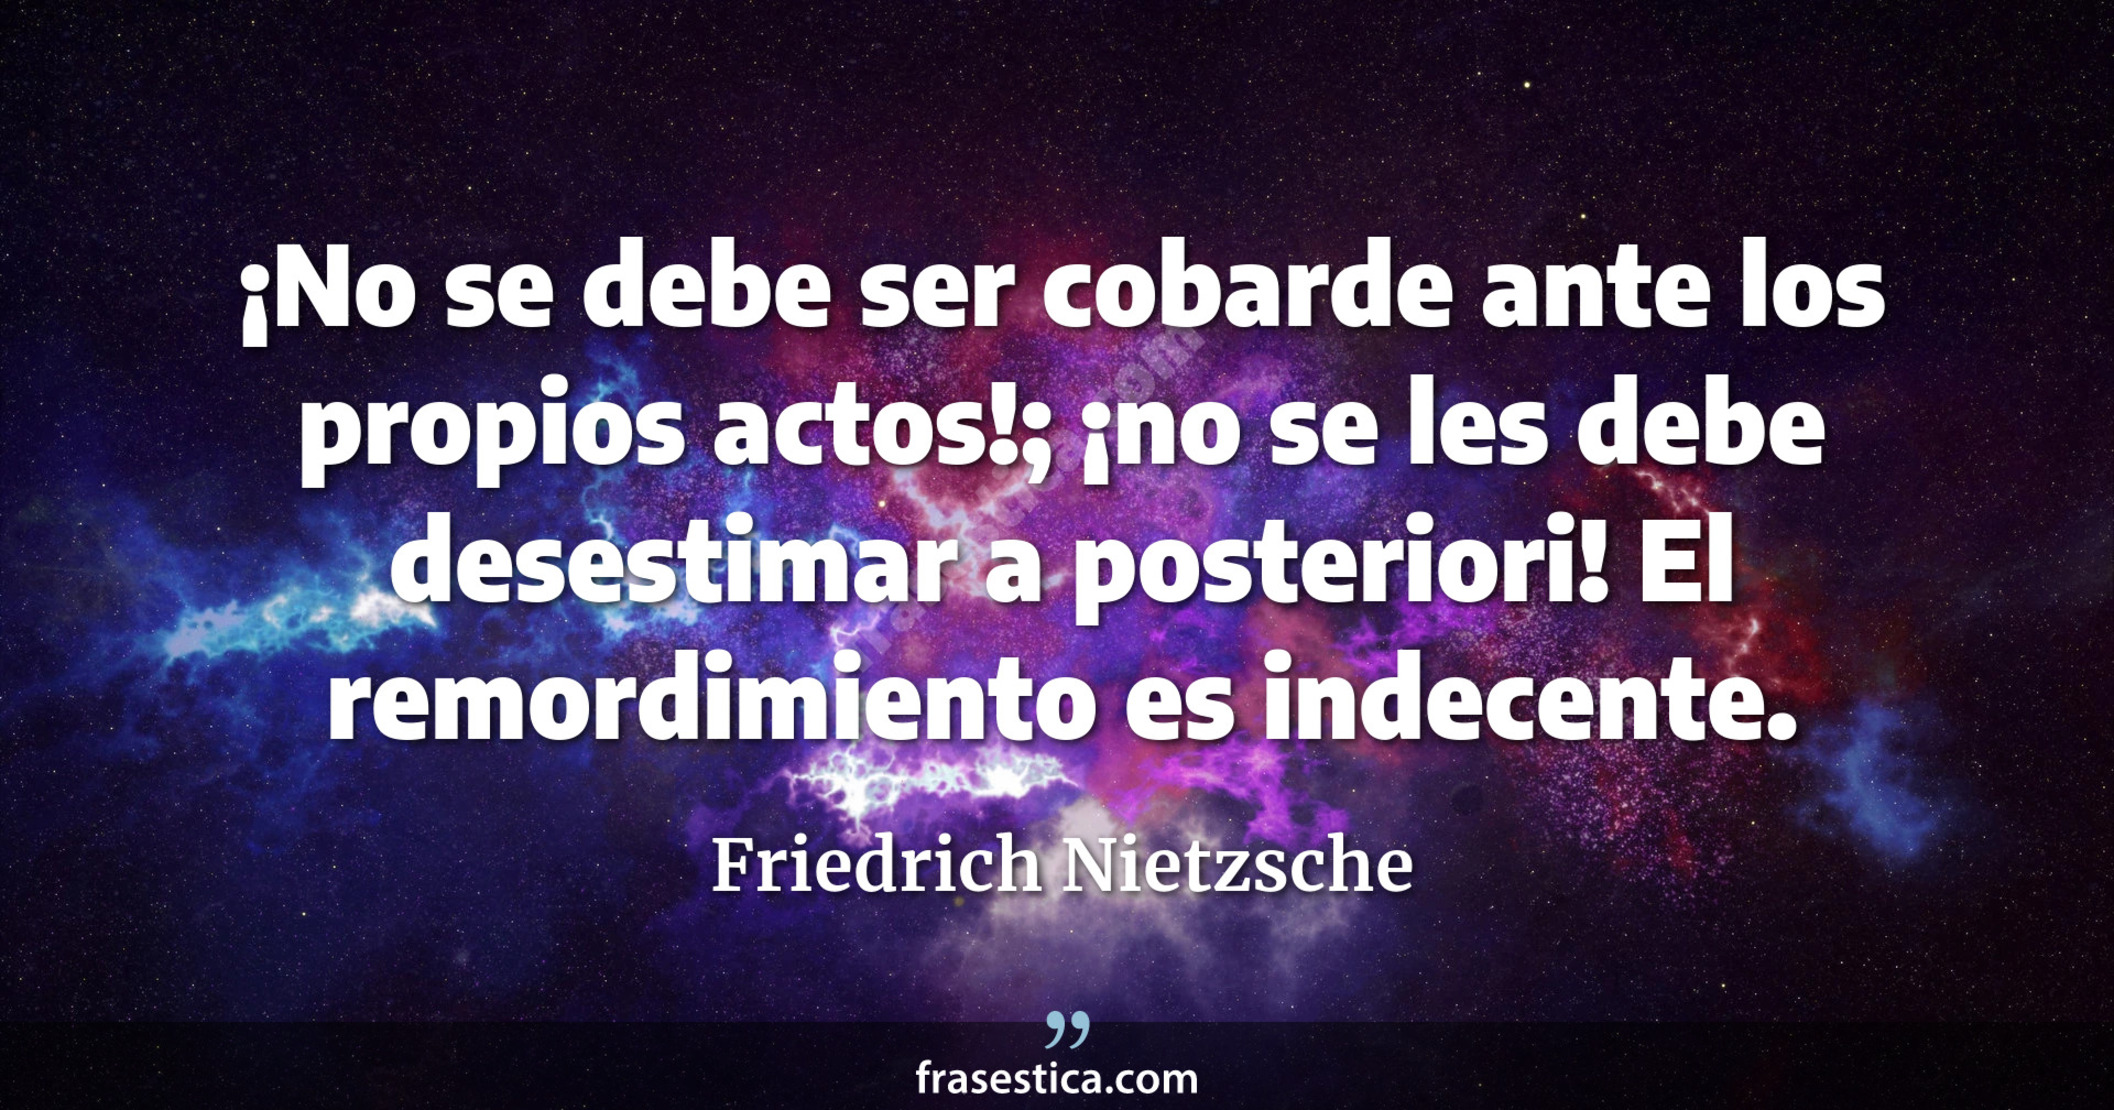 ¡No se debe ser cobarde ante los propios actos!; ¡no se les debe desestimar a posteriori! El remordimiento es indecente. - Friedrich Nietzsche